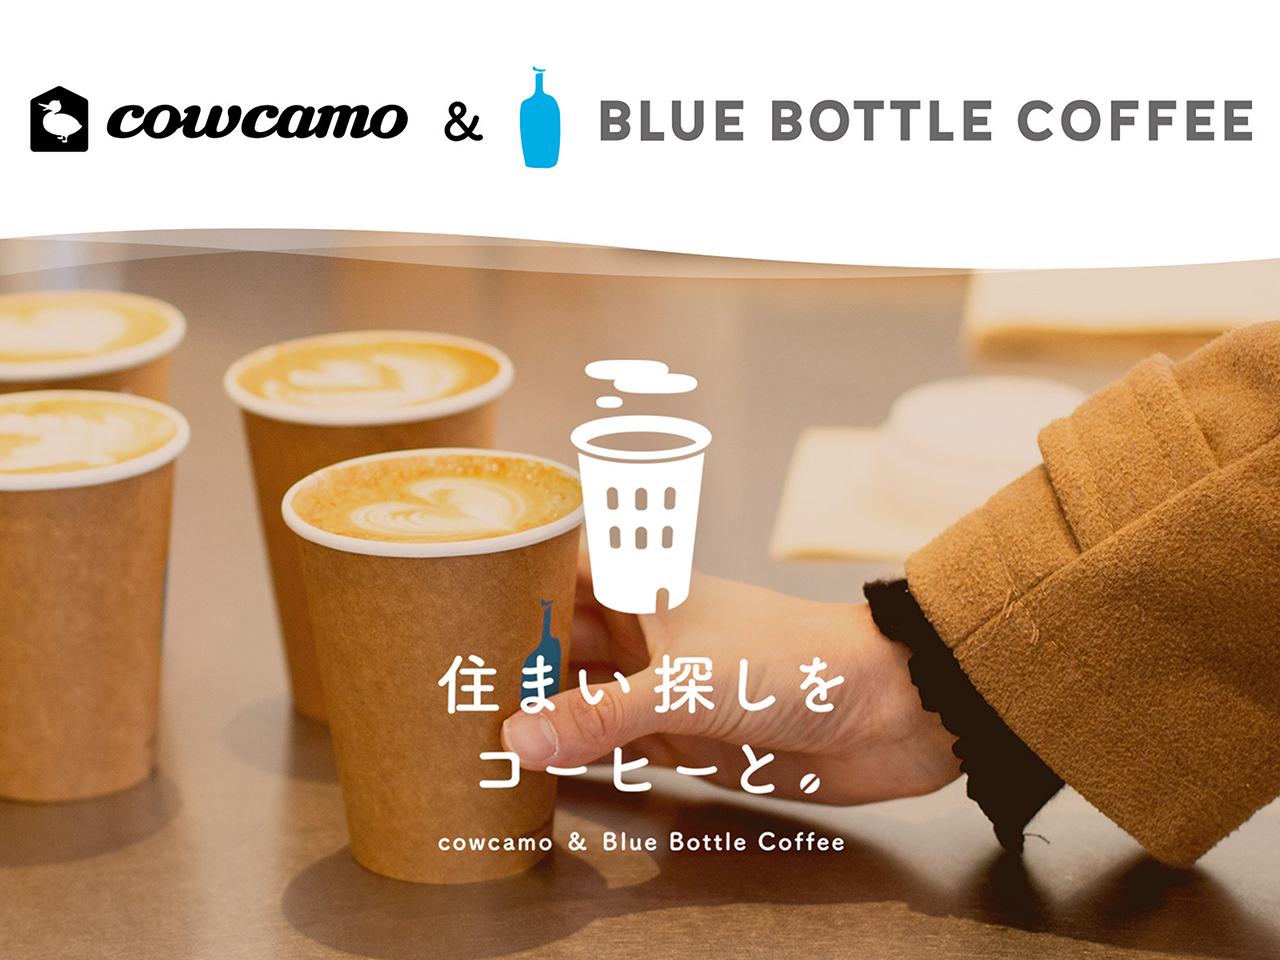 カウカモとブルーボトルコーヒーによるコラボレーション企画「住まい探しをコーヒーと。」